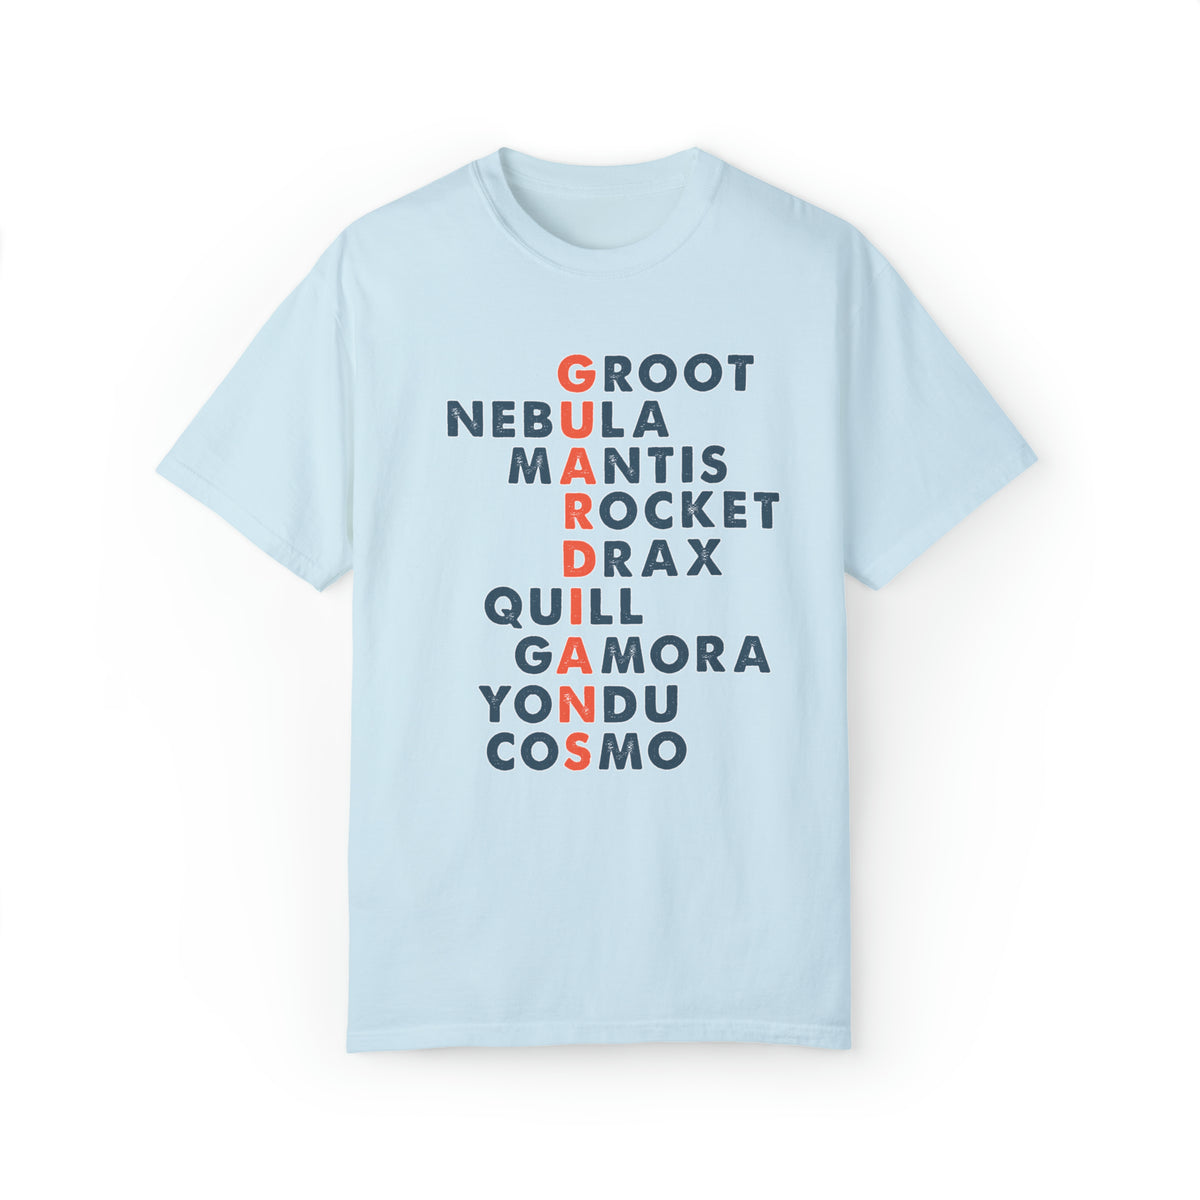 Guardians Comfort Colors Unisex Garment-Dyed T-shirt